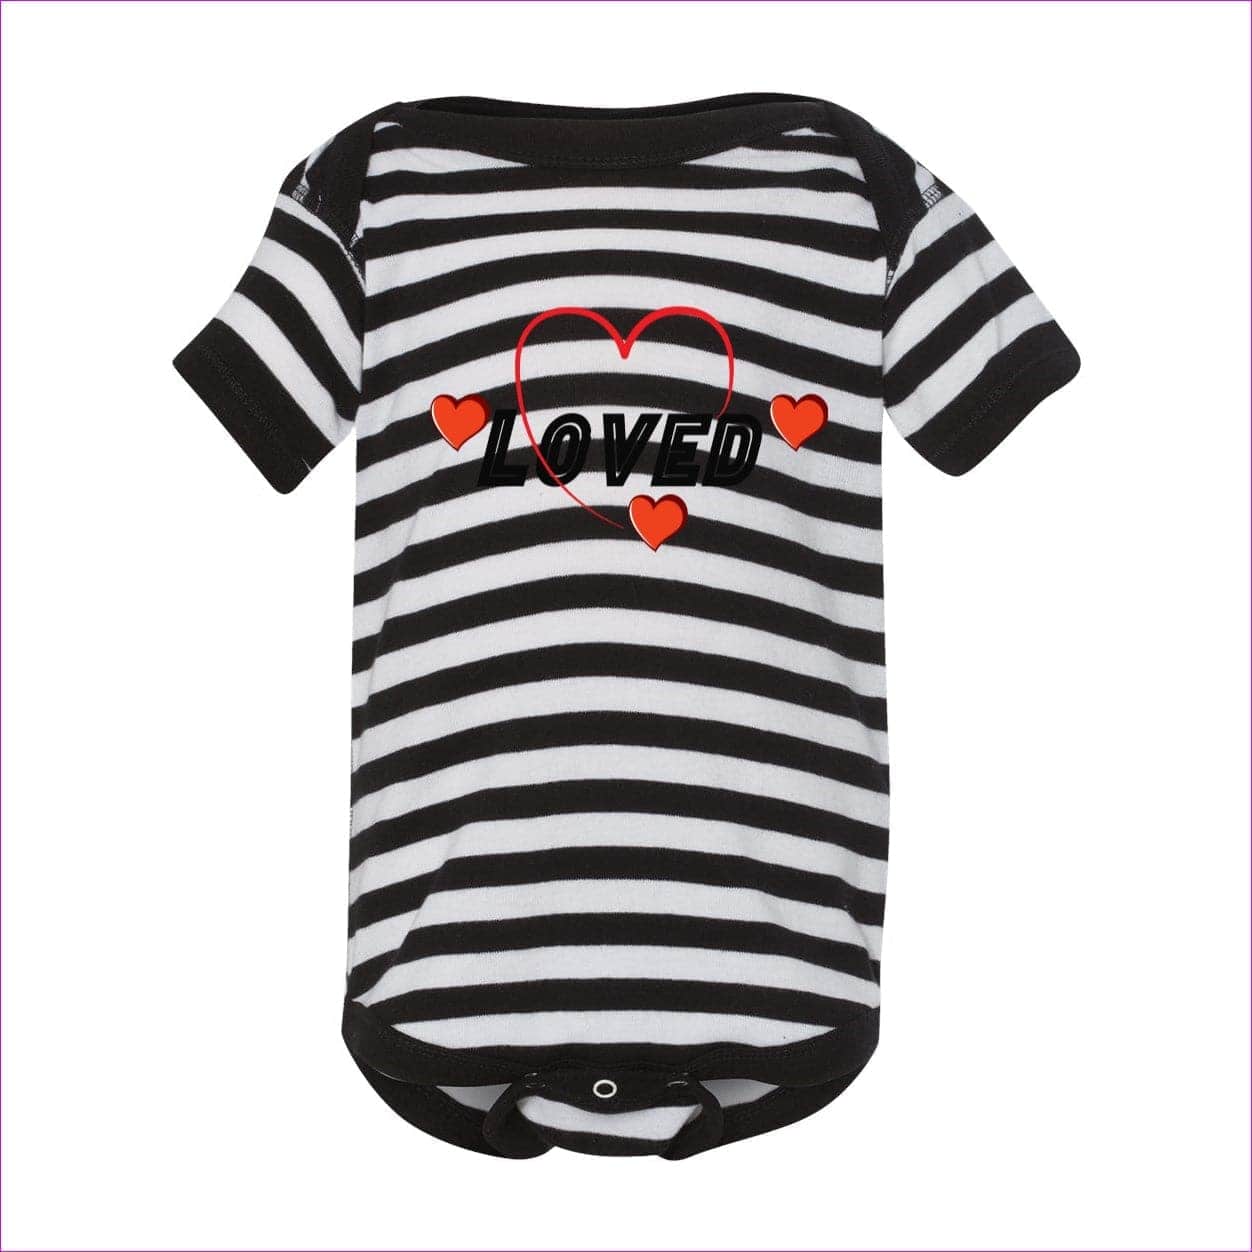 Black/ White Stripe Loved Infant Baby Rib Bodysuit - infant onesie at TFC&H Co.